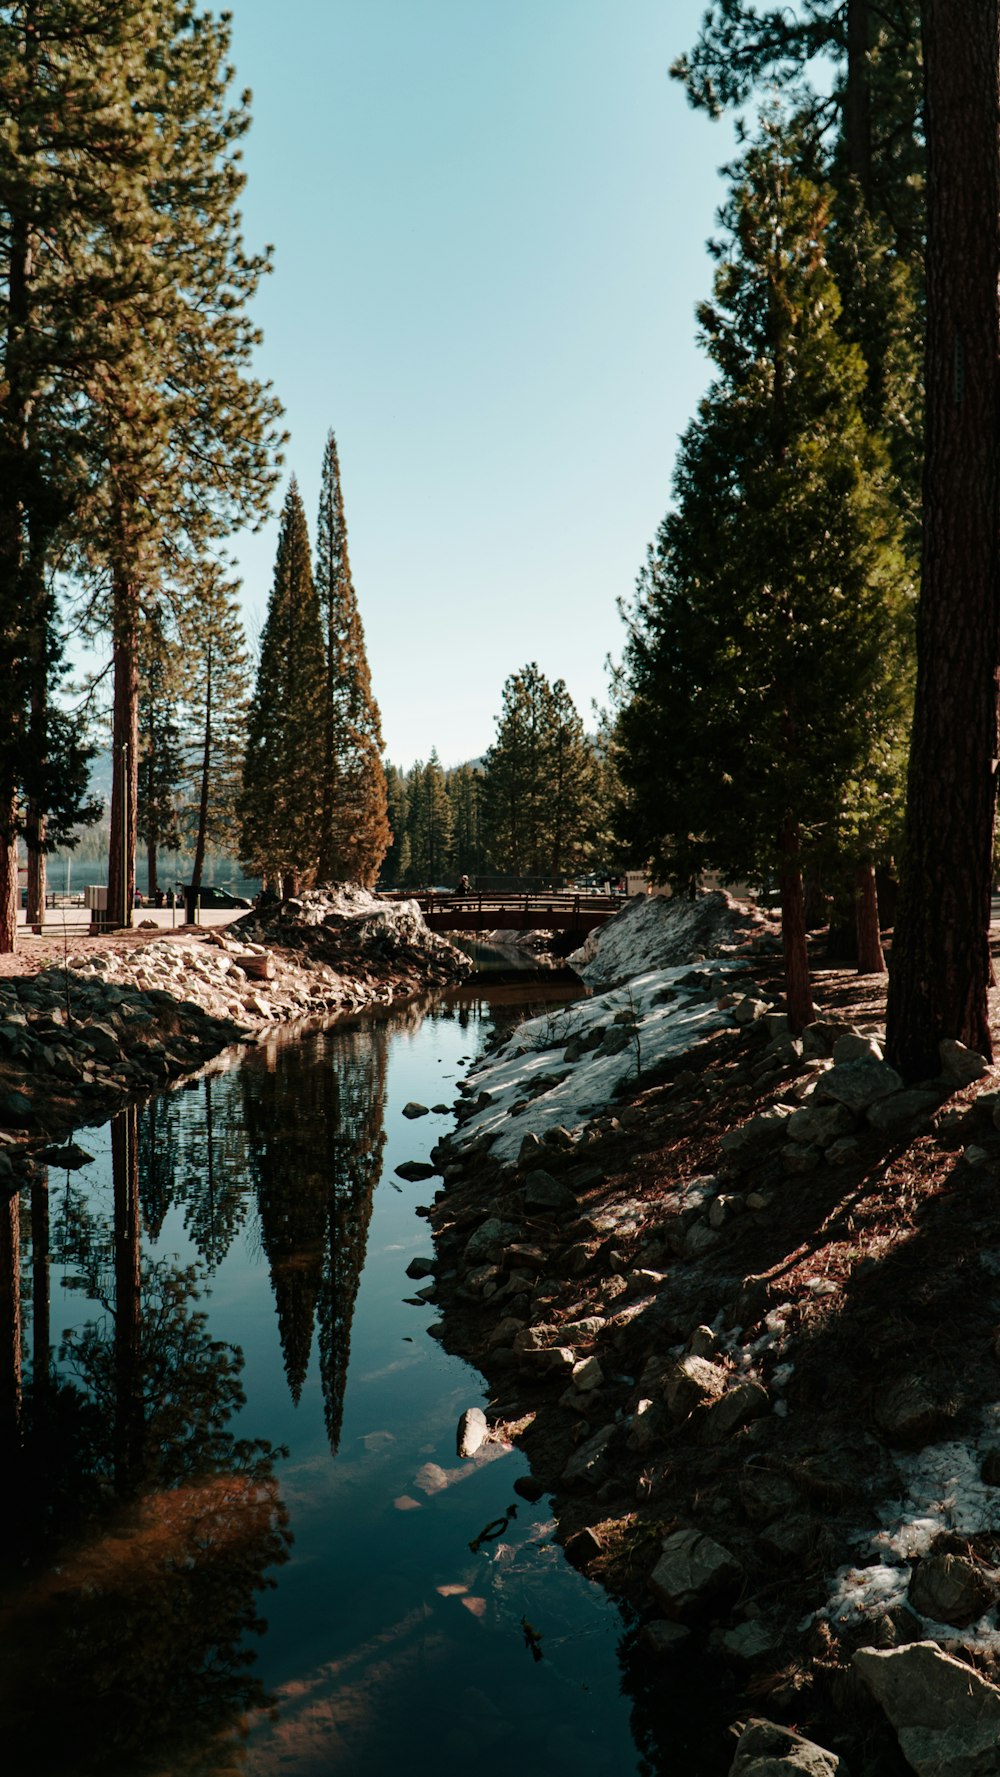 uno specchio d'acqua circondato da alberi e rocce